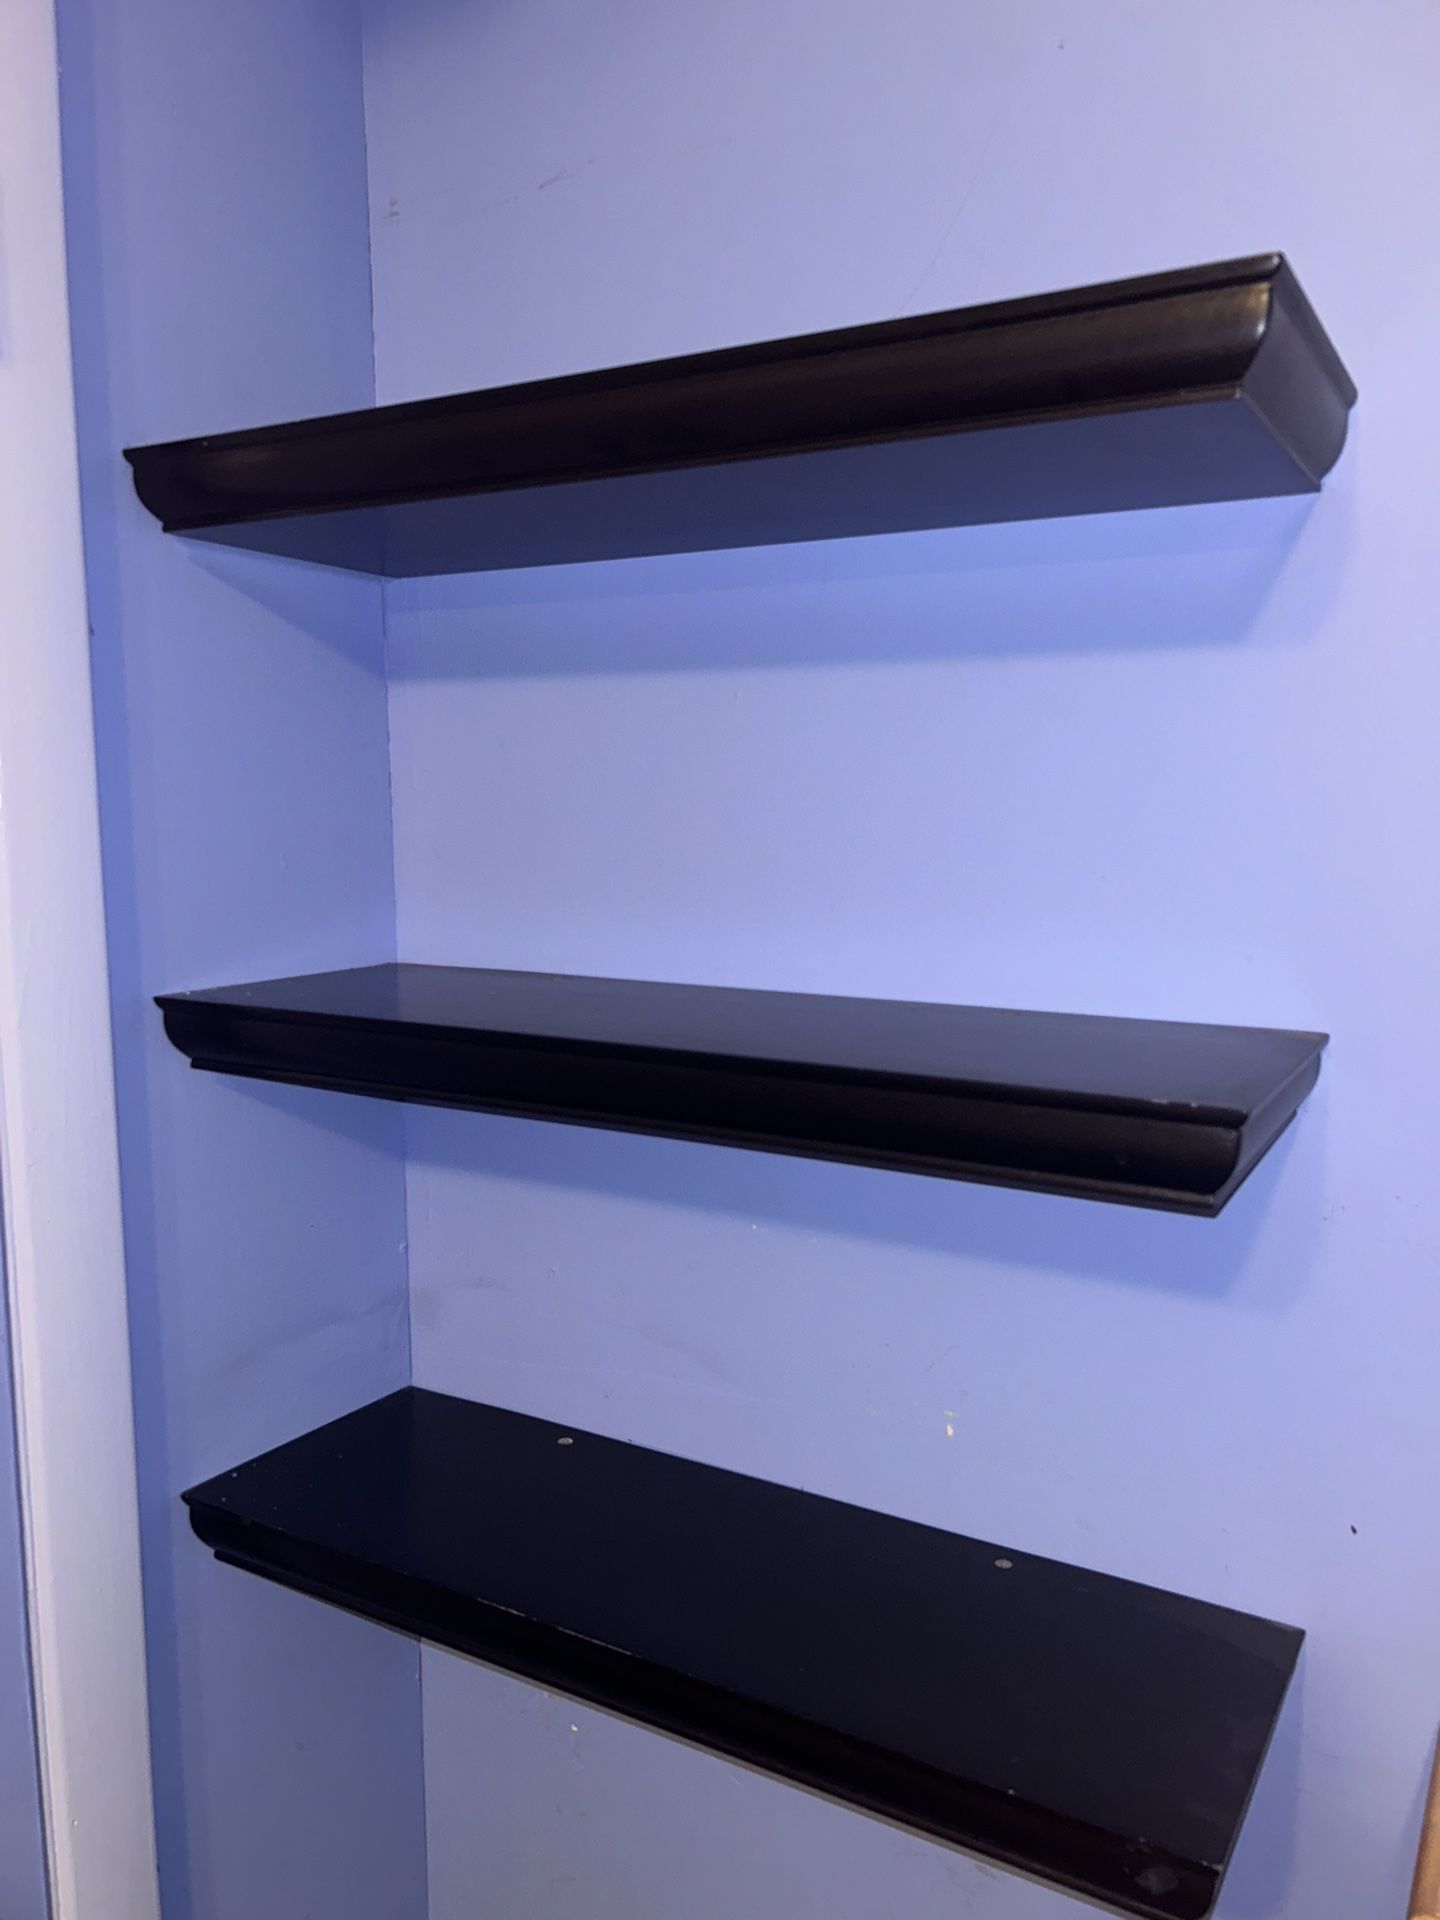 3 Nice Medium Size Mohogany Style Floating Shelves